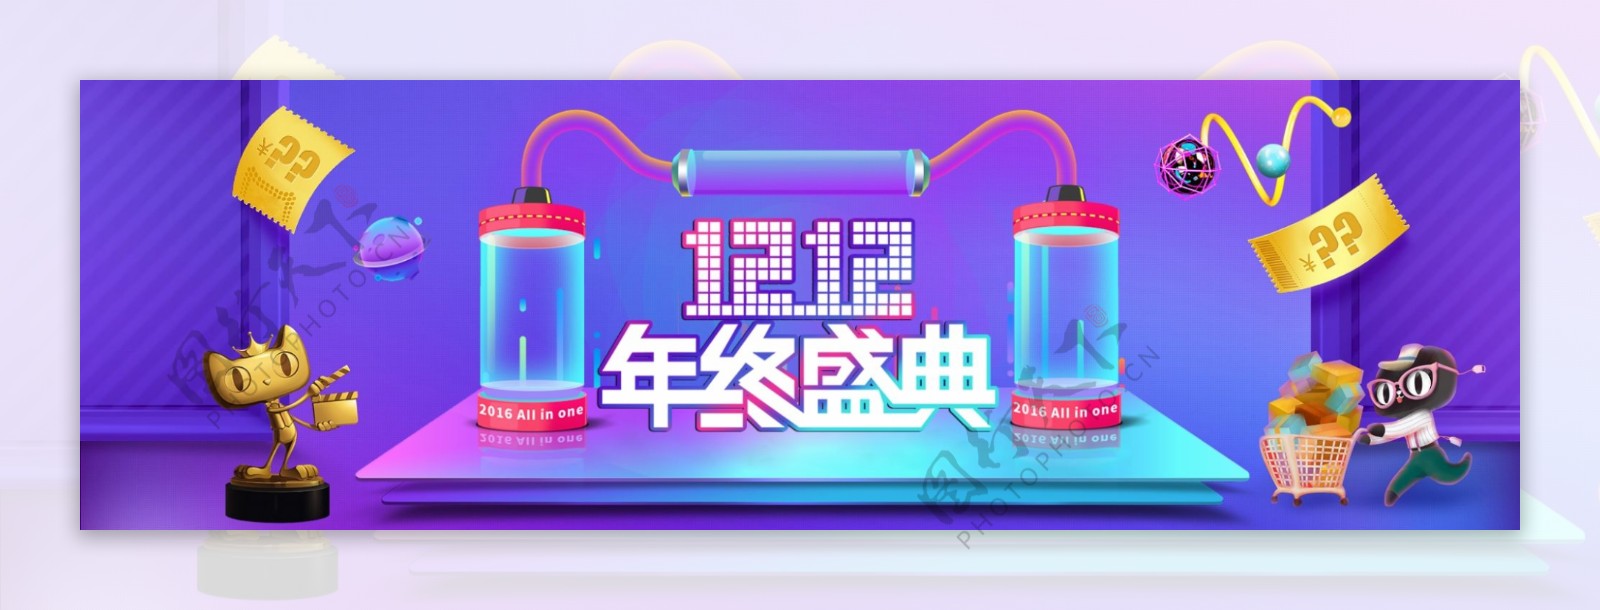 淘宝天猫双12.12狂欢活动节日促销海报